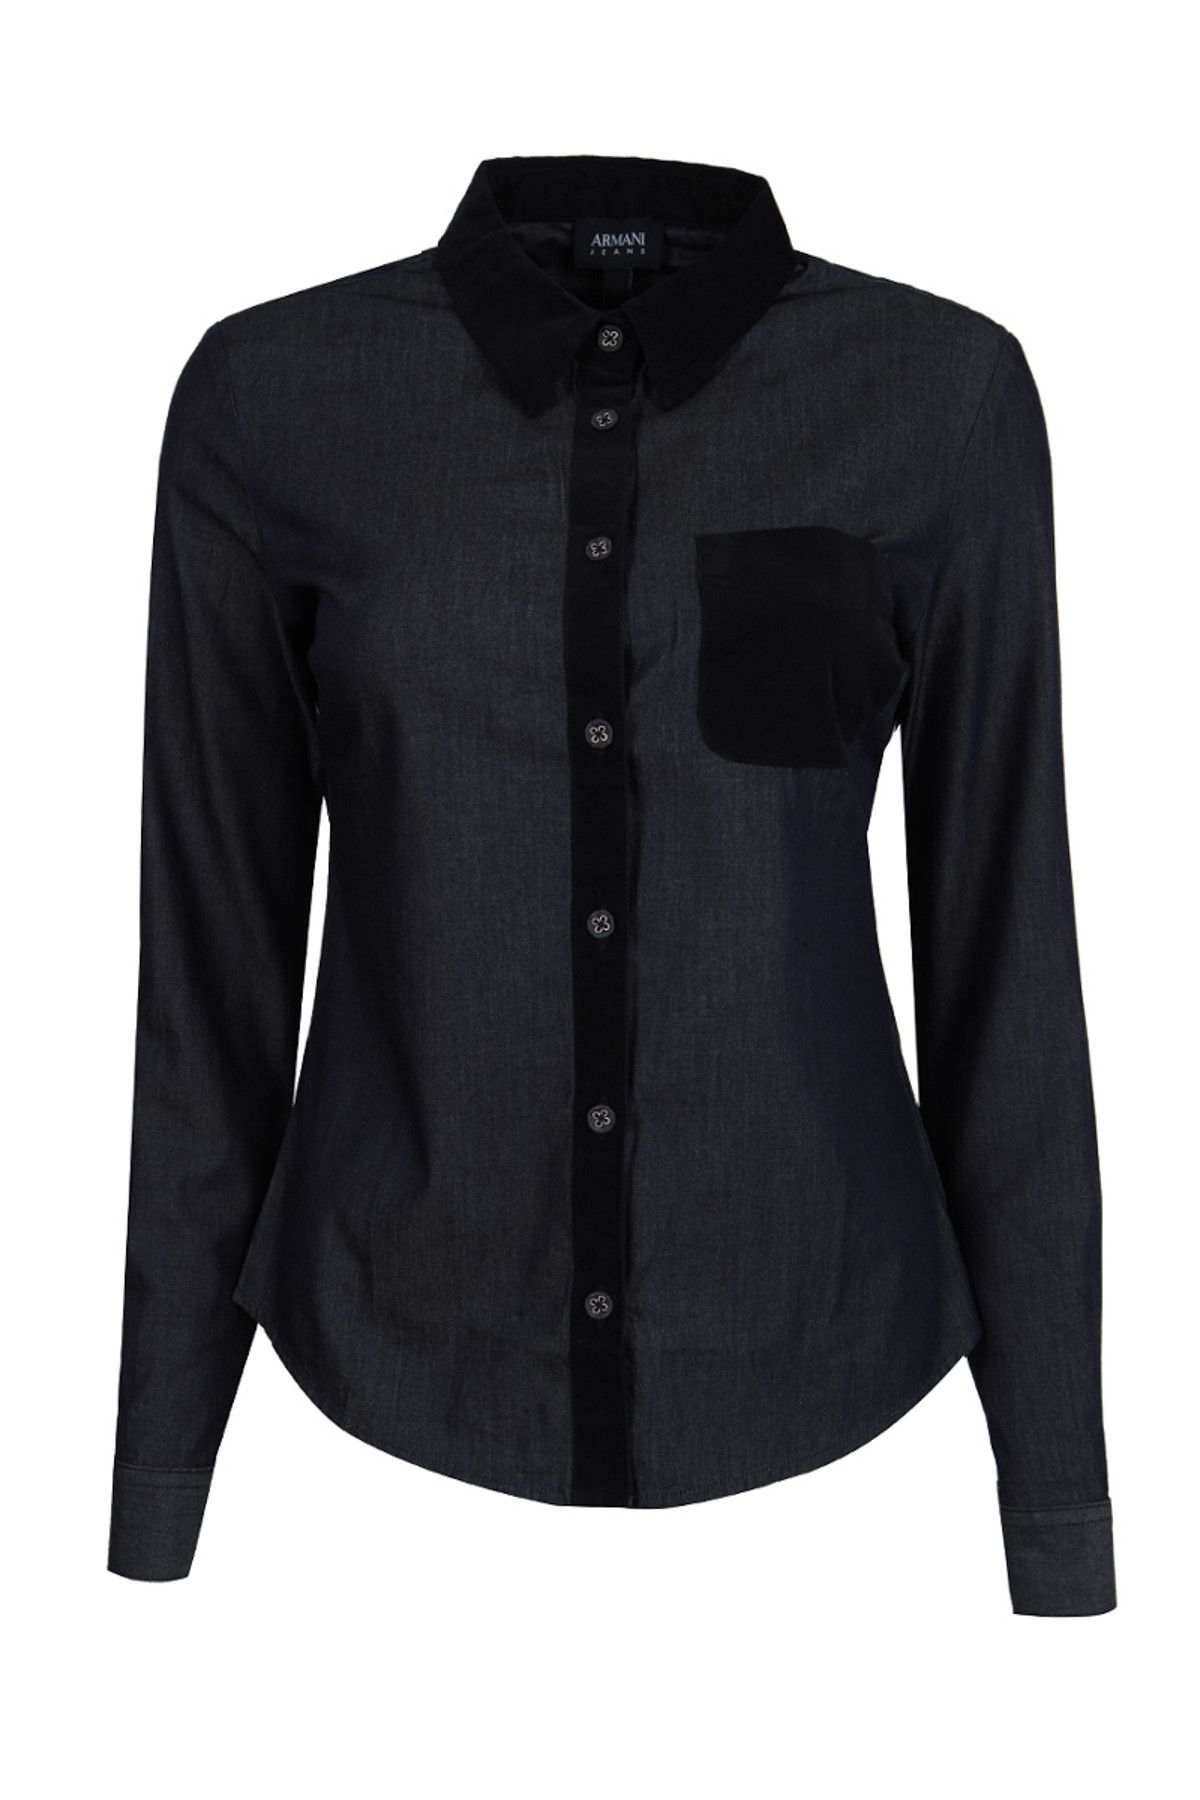 Armani Jeans Kadın Siyah Gömlek 26Y5C025Nbyzc1500